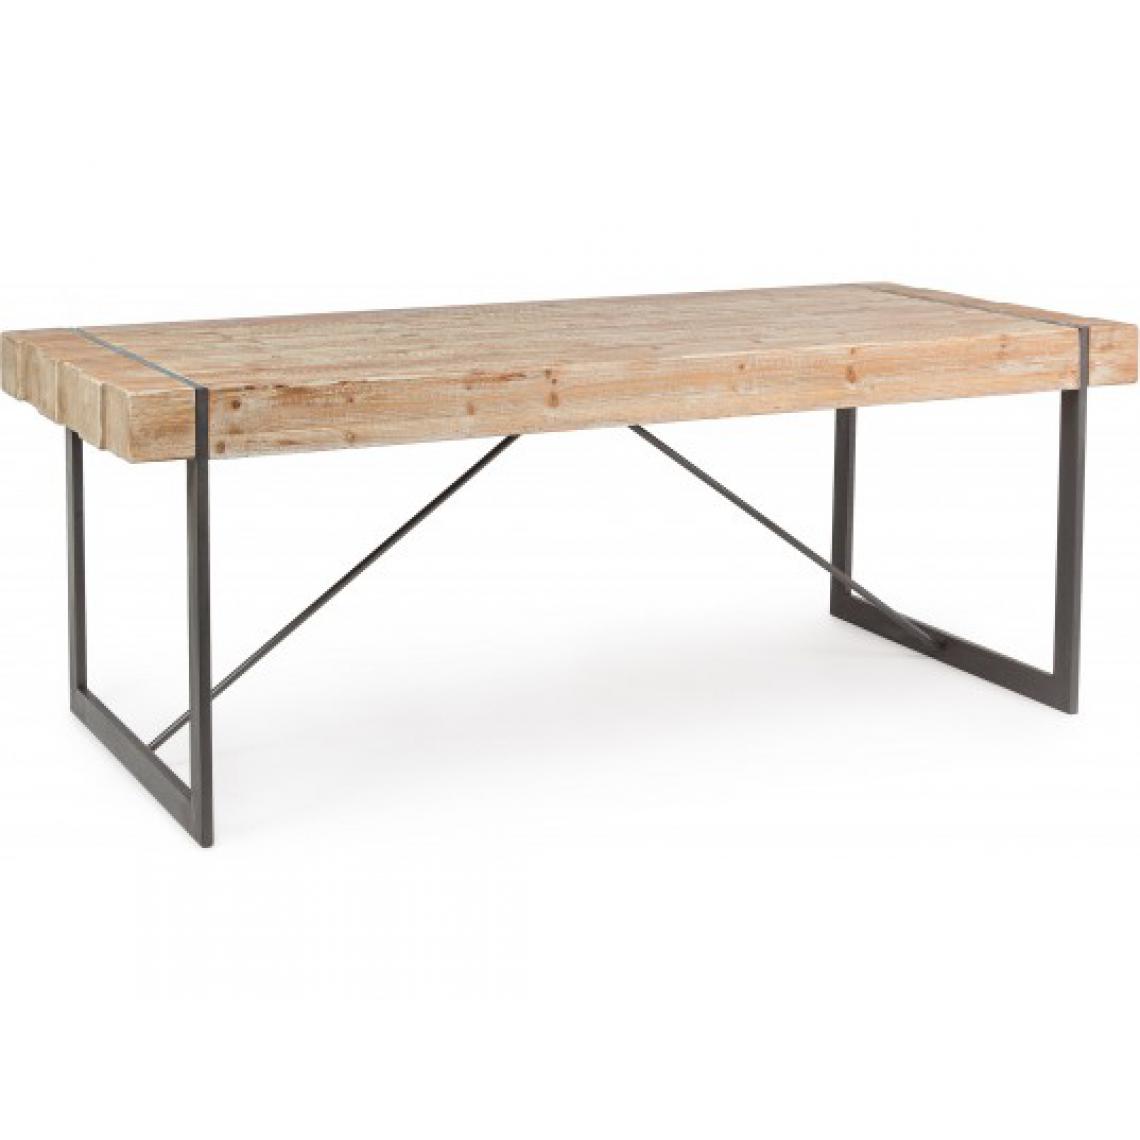 Bizzotto - Table de salle à manger Garett table bois / métal 200 x 90 cm - Tables à manger